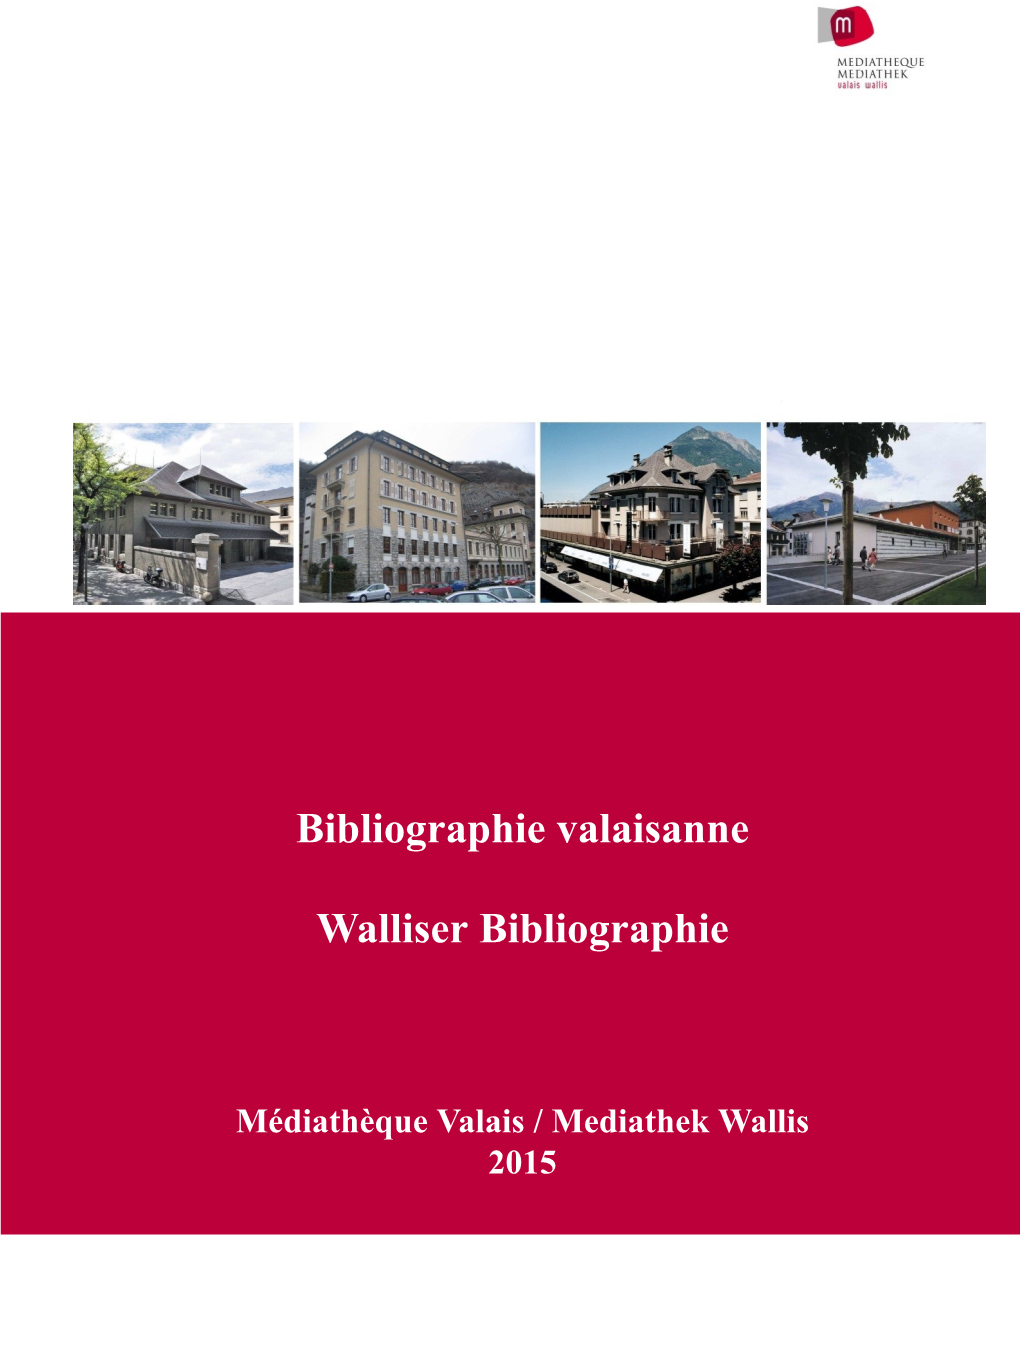 Bibliographie Valaisanne 2015